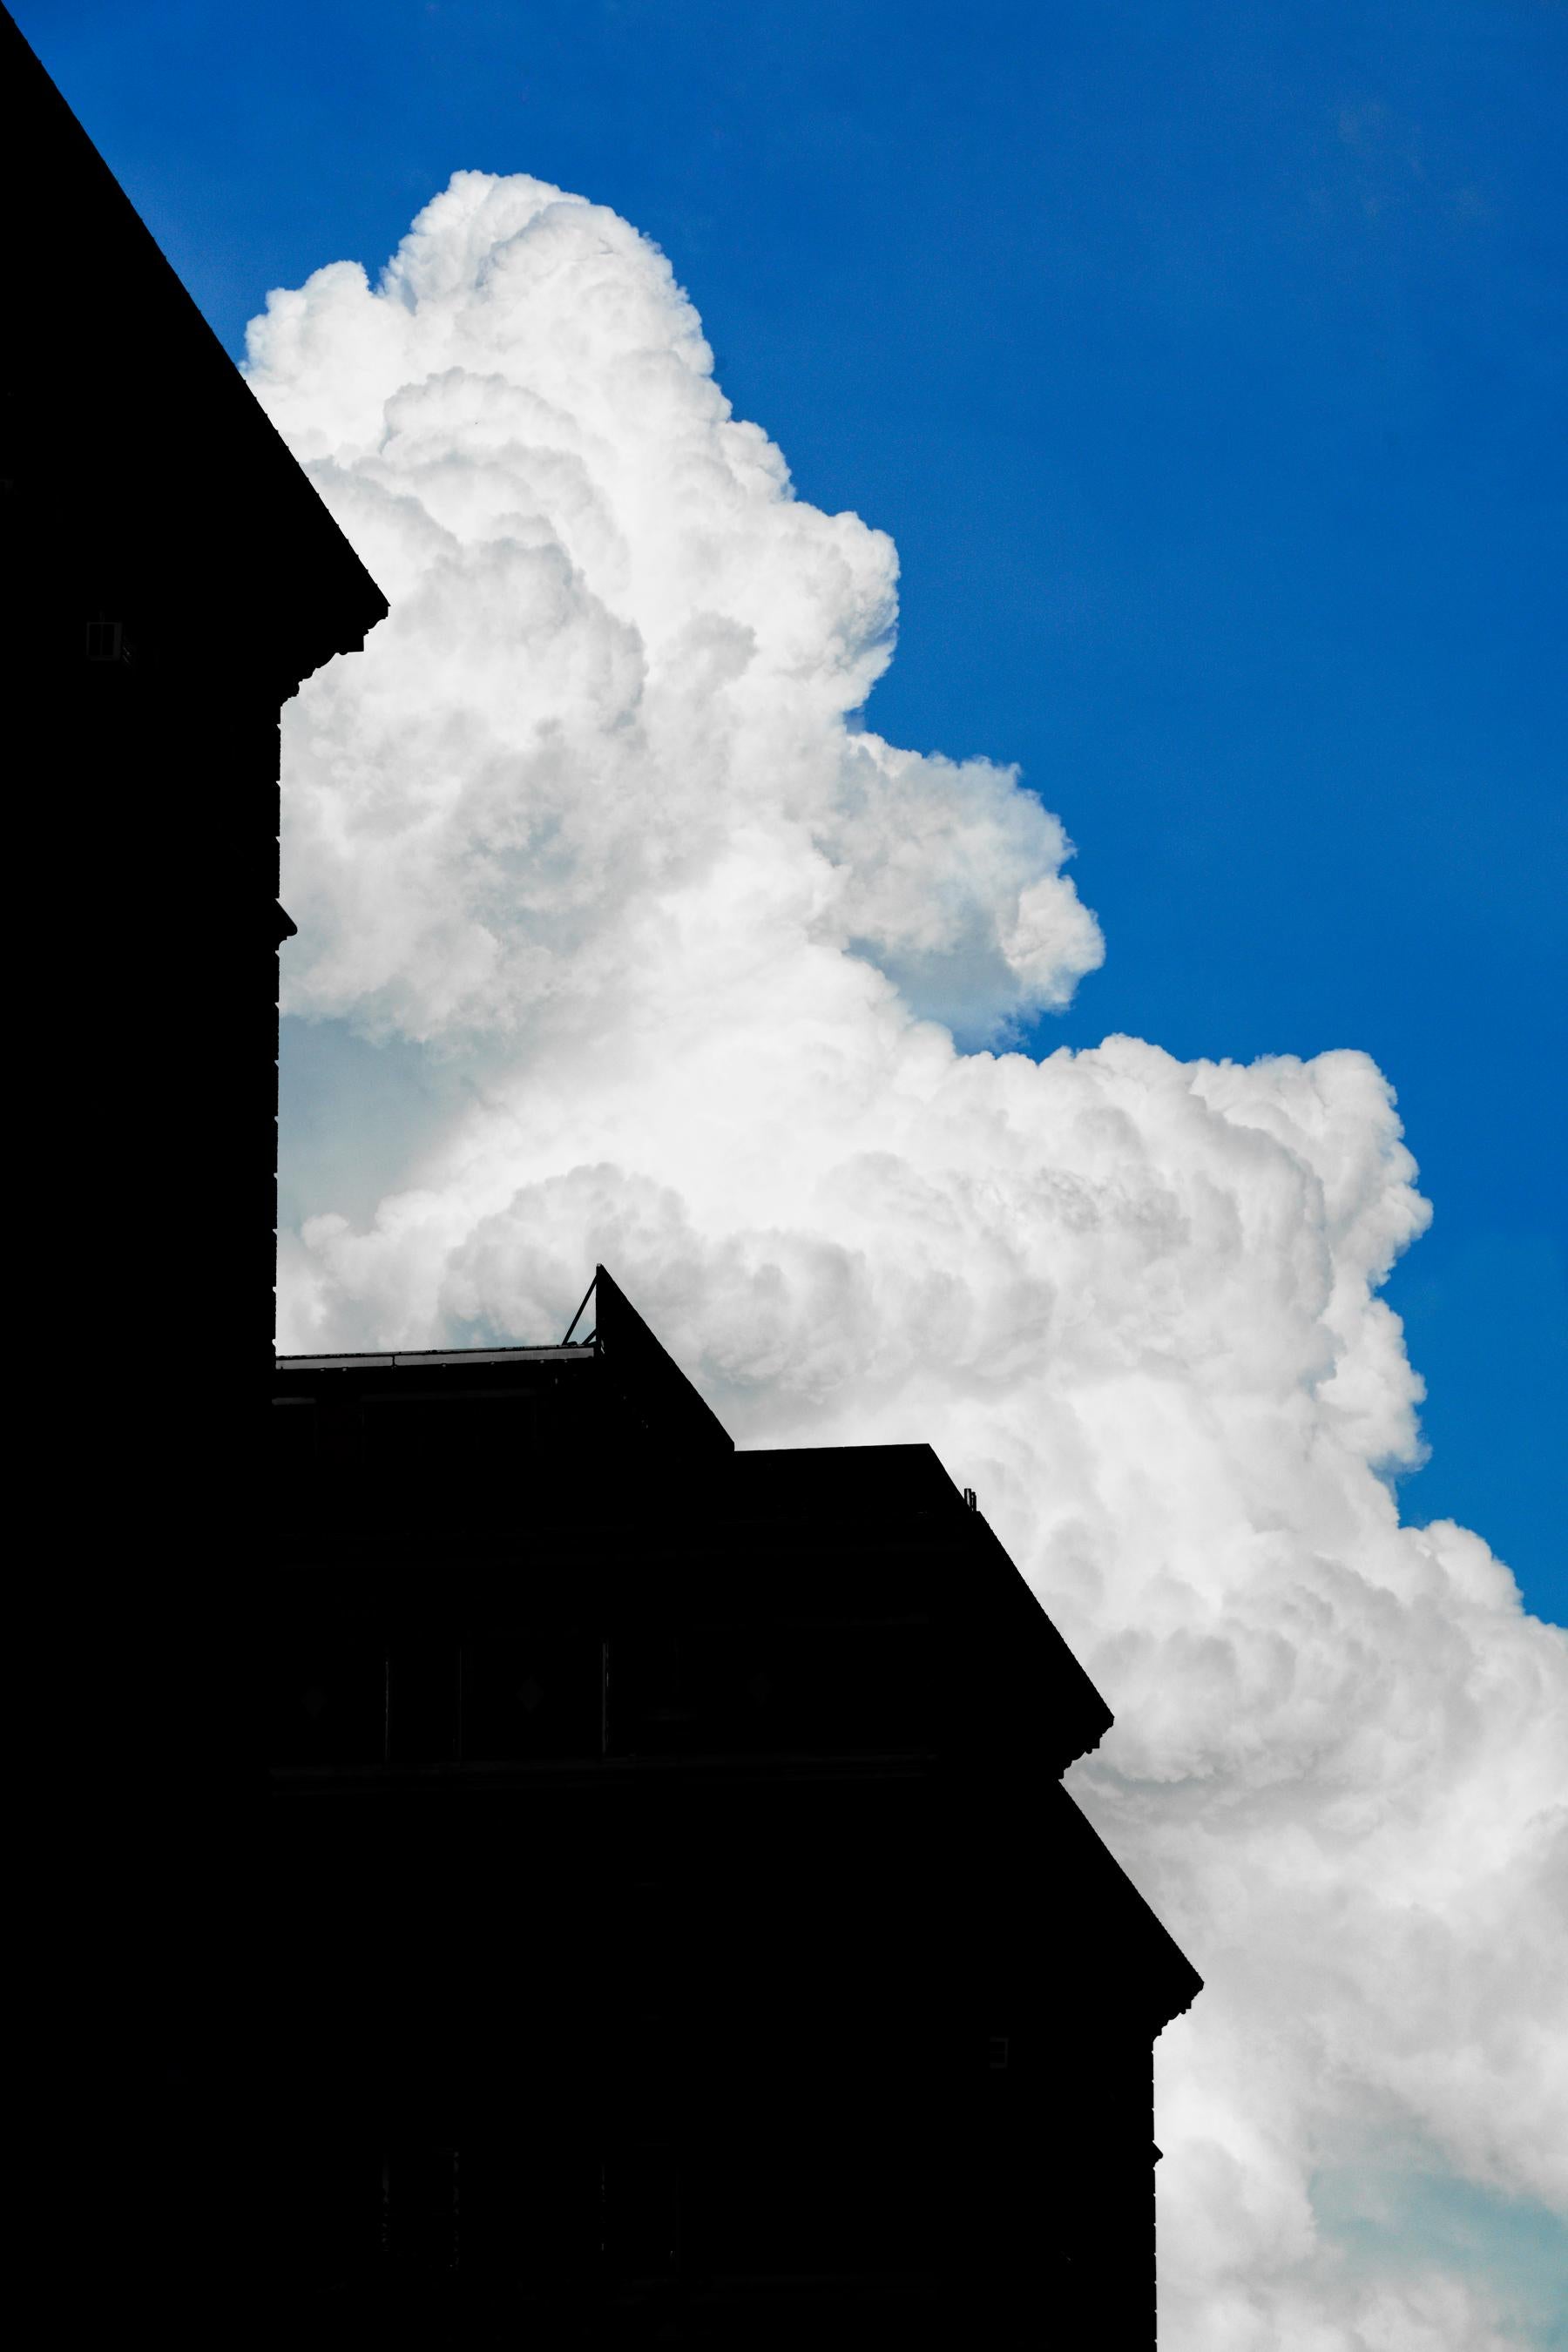 « Building With Cloud #2 », photographie, ville, architecture, nuage blanc, ciel bleu